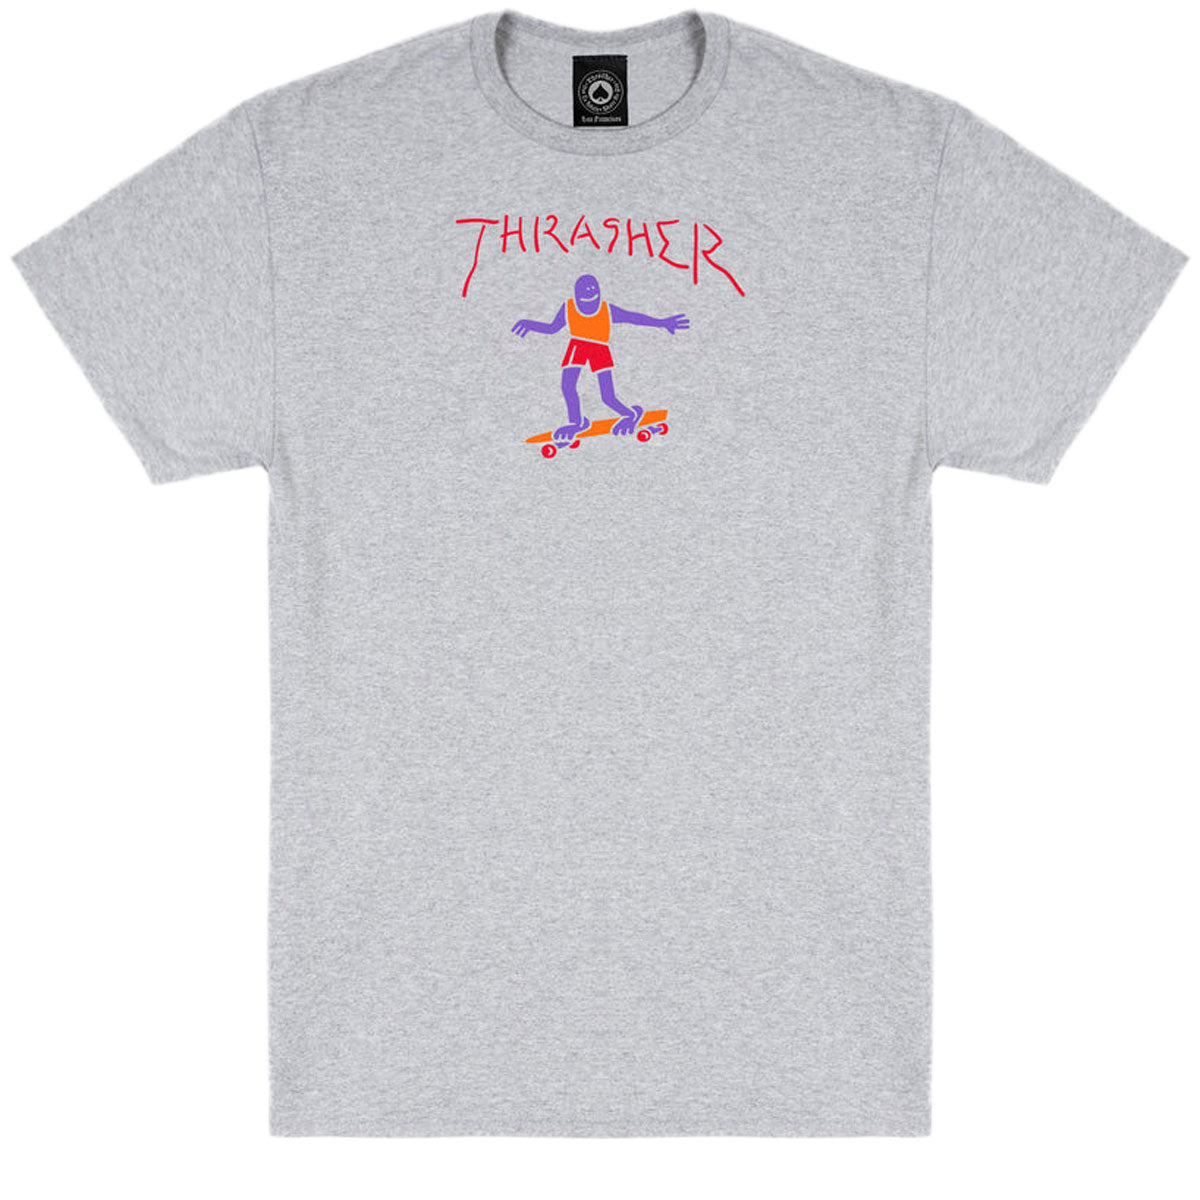 Thrasher Gonz Fill T-Shirt - Ash Grey image 1